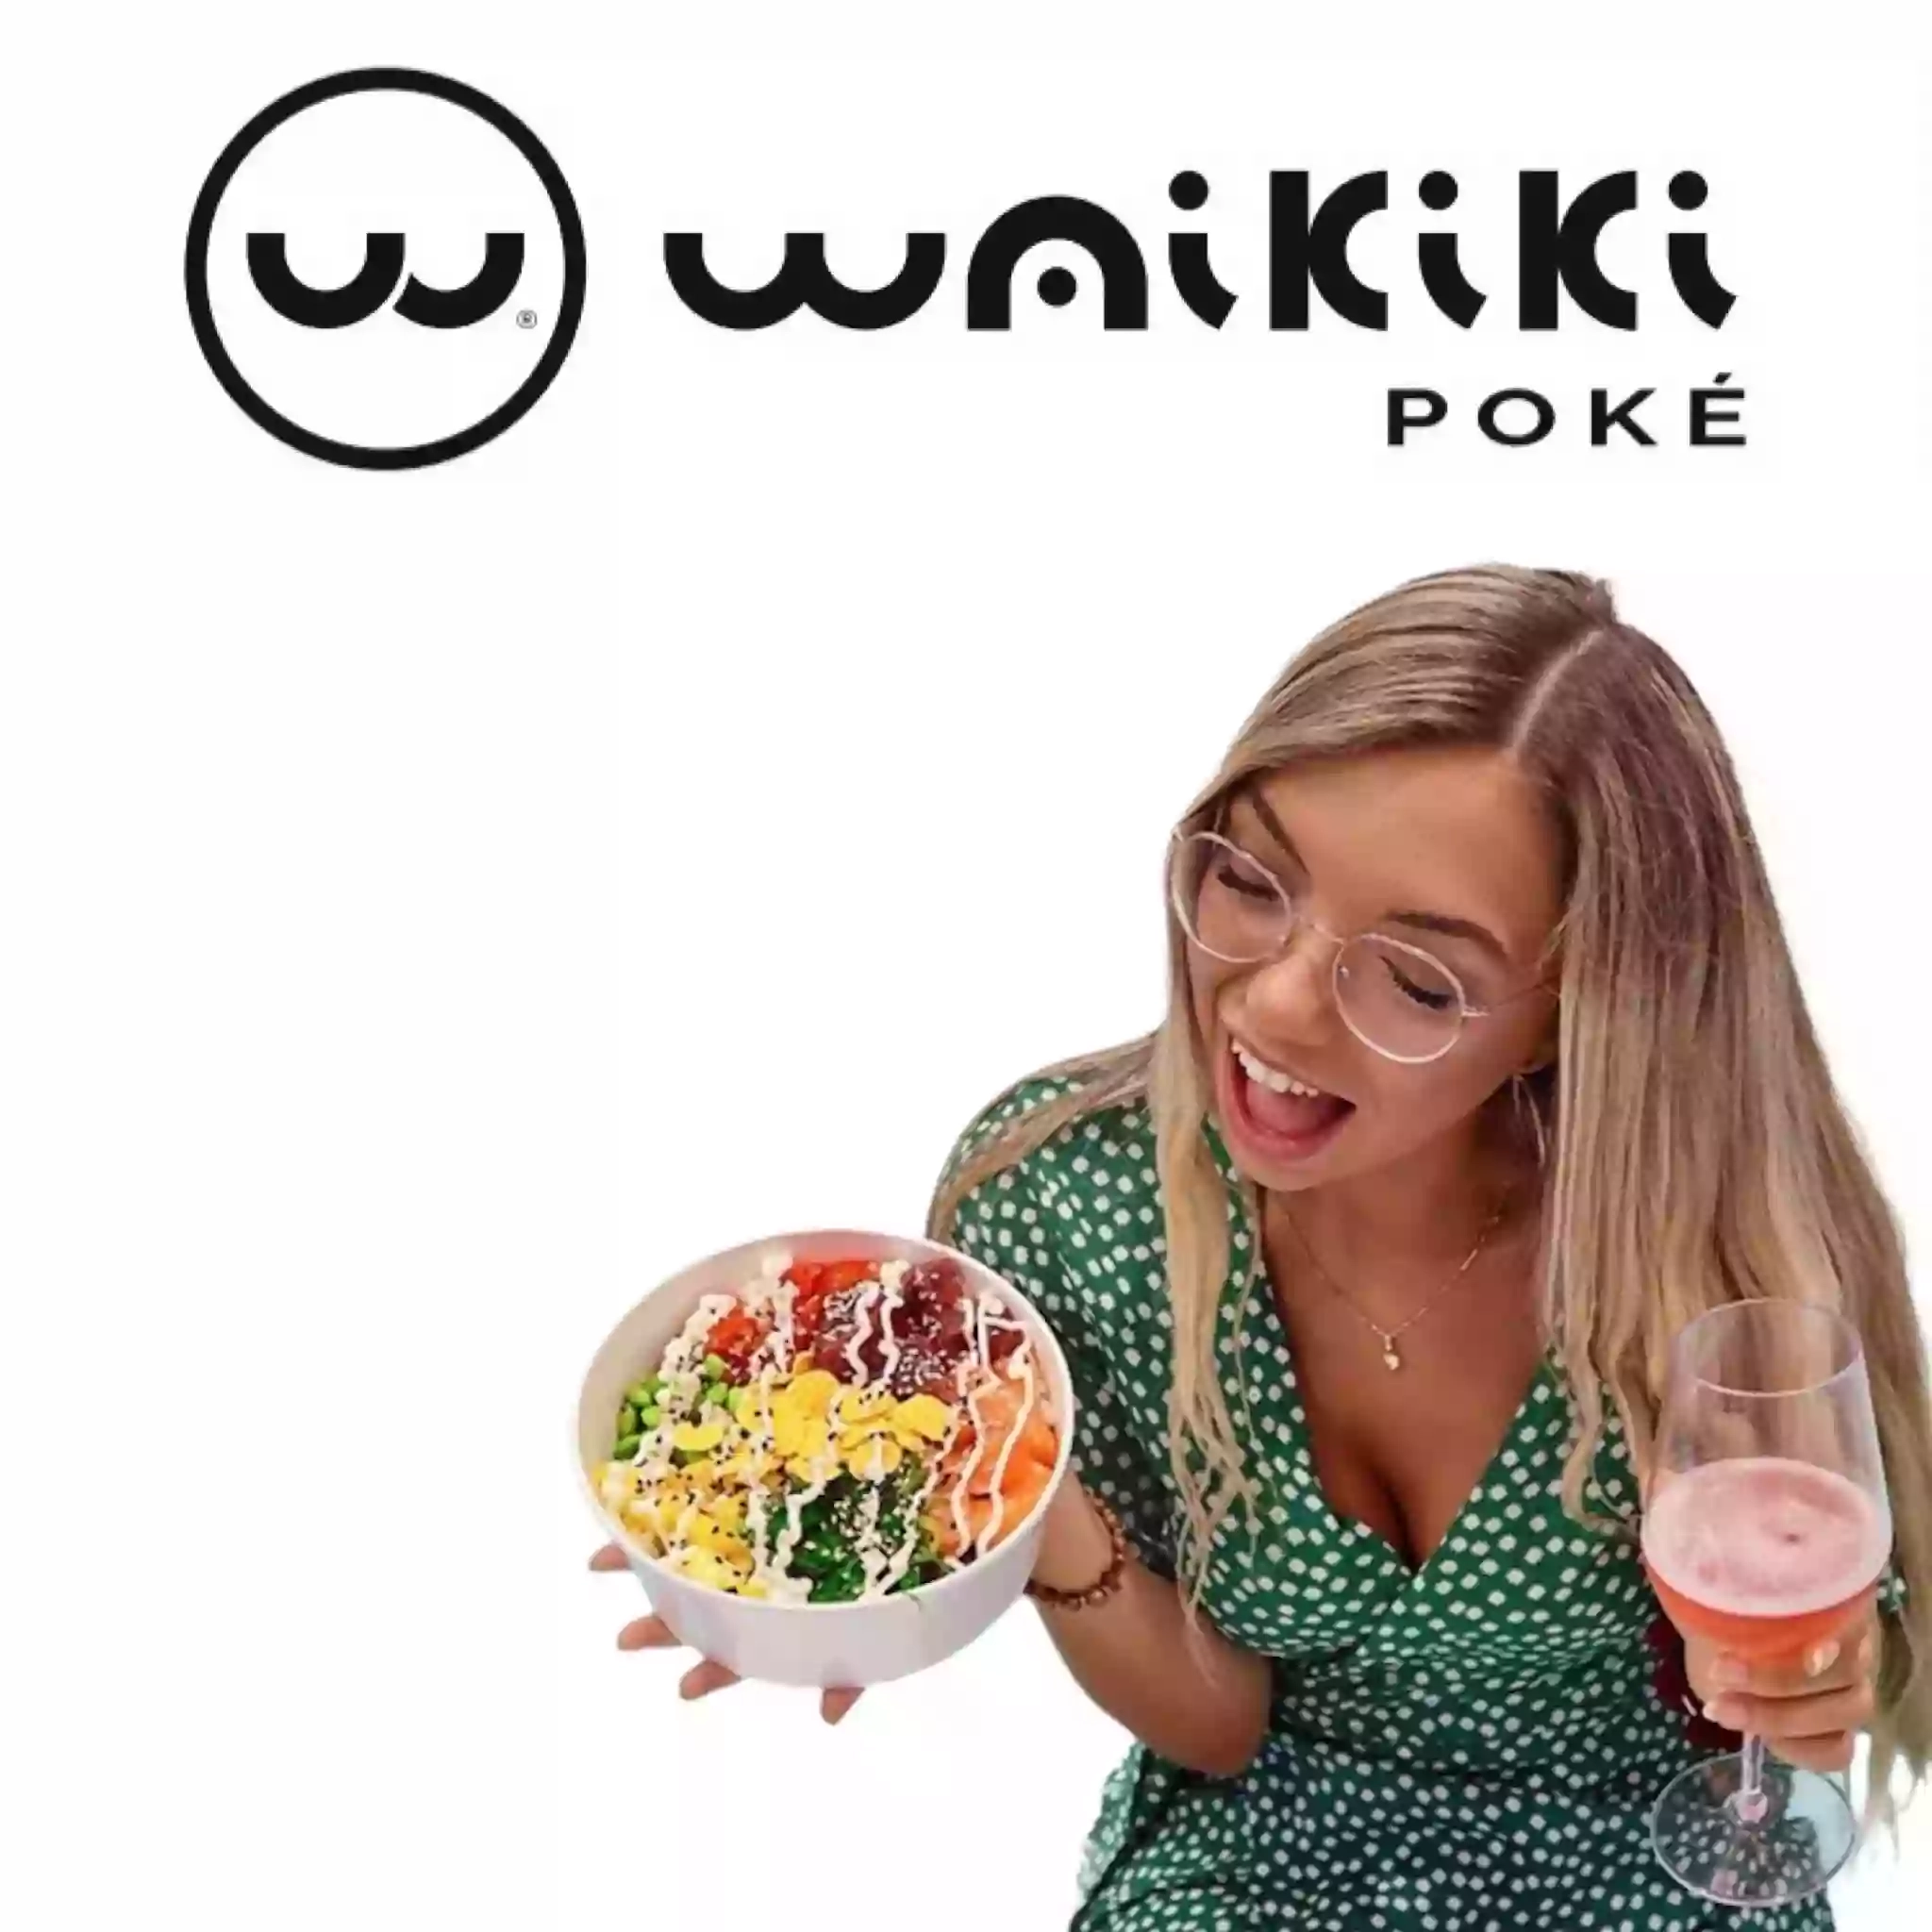 Waikiki Poké - Napoli